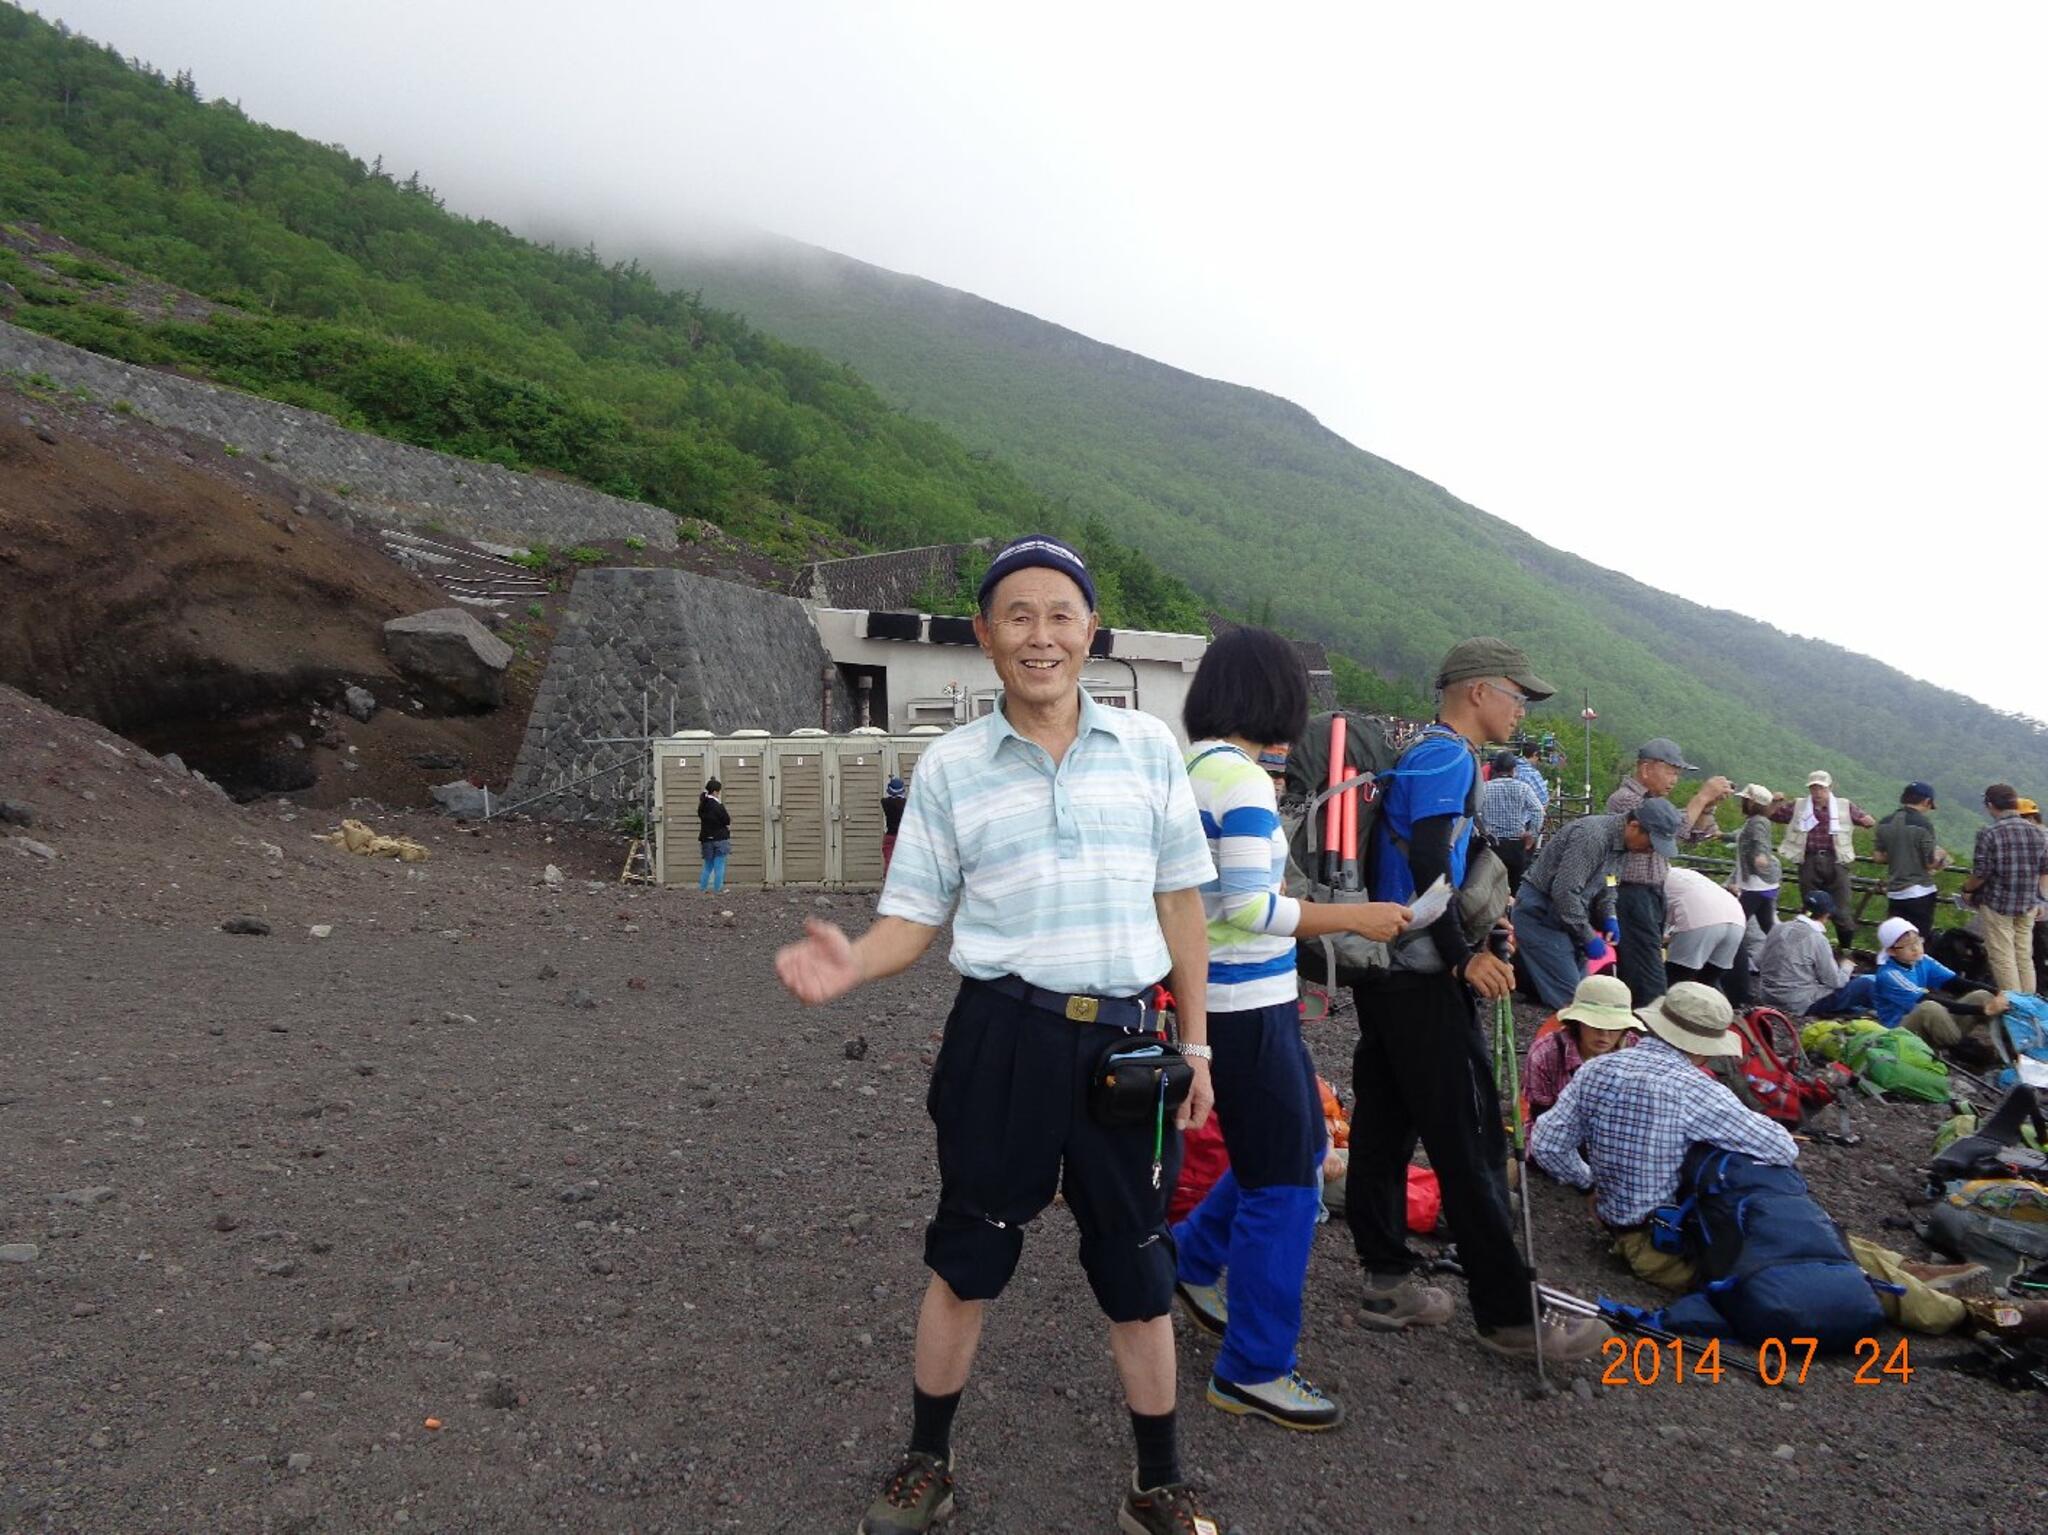 中村整体療術院からのお知らせ(過去、富士登山の思い出。)に関する写真